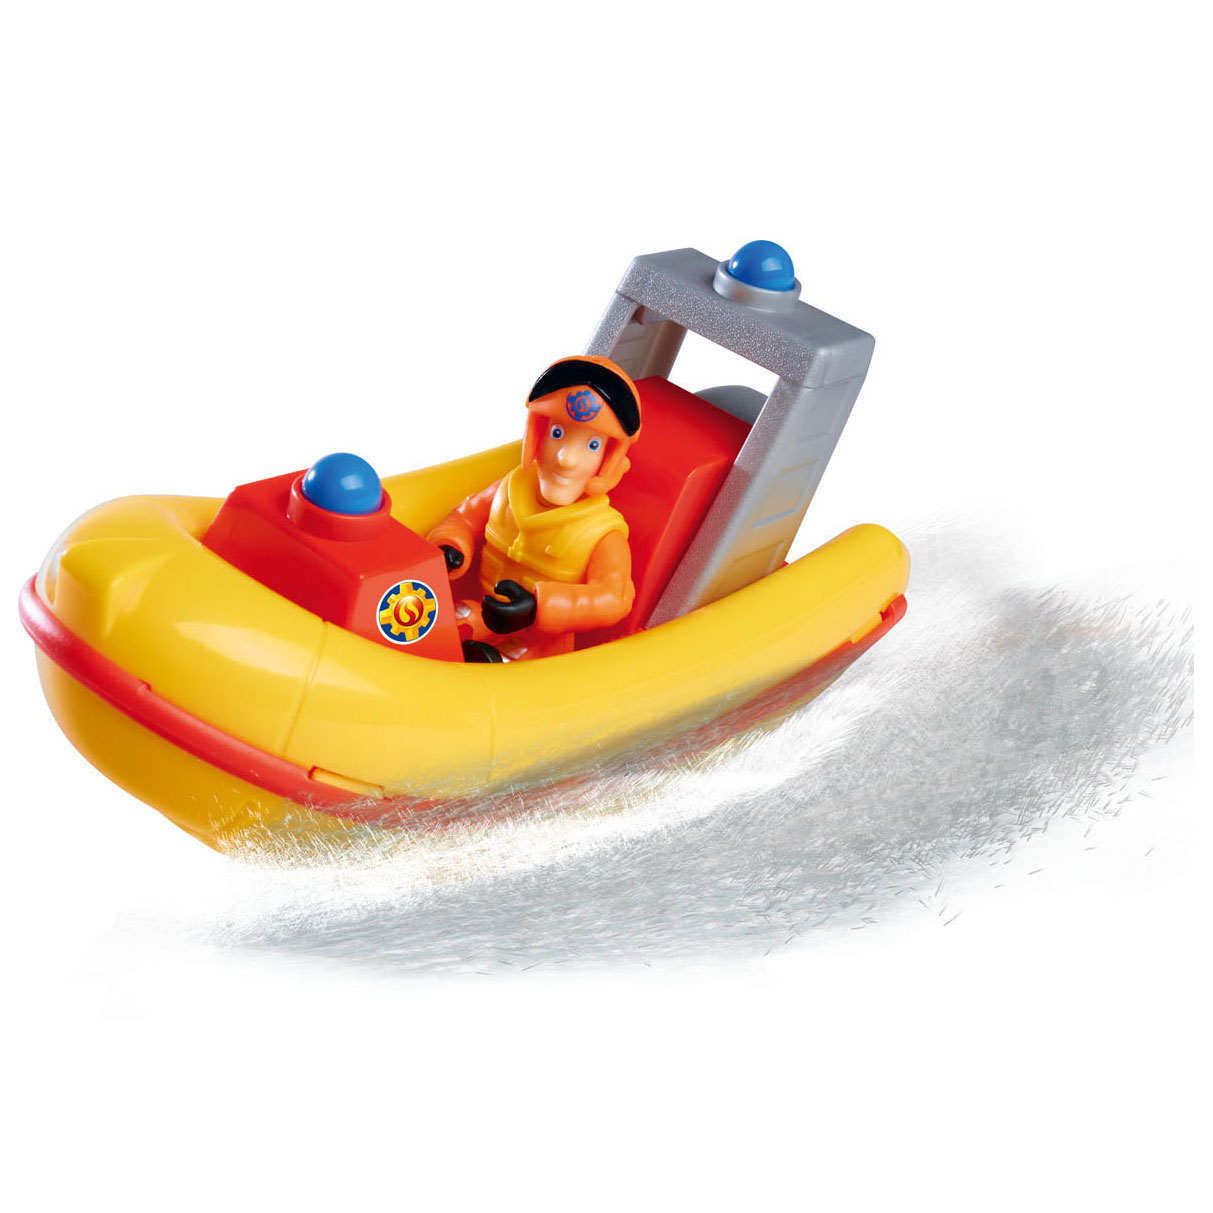 Feuerwehrmann Sam Rettungsboot mit Spielfigur Elvis